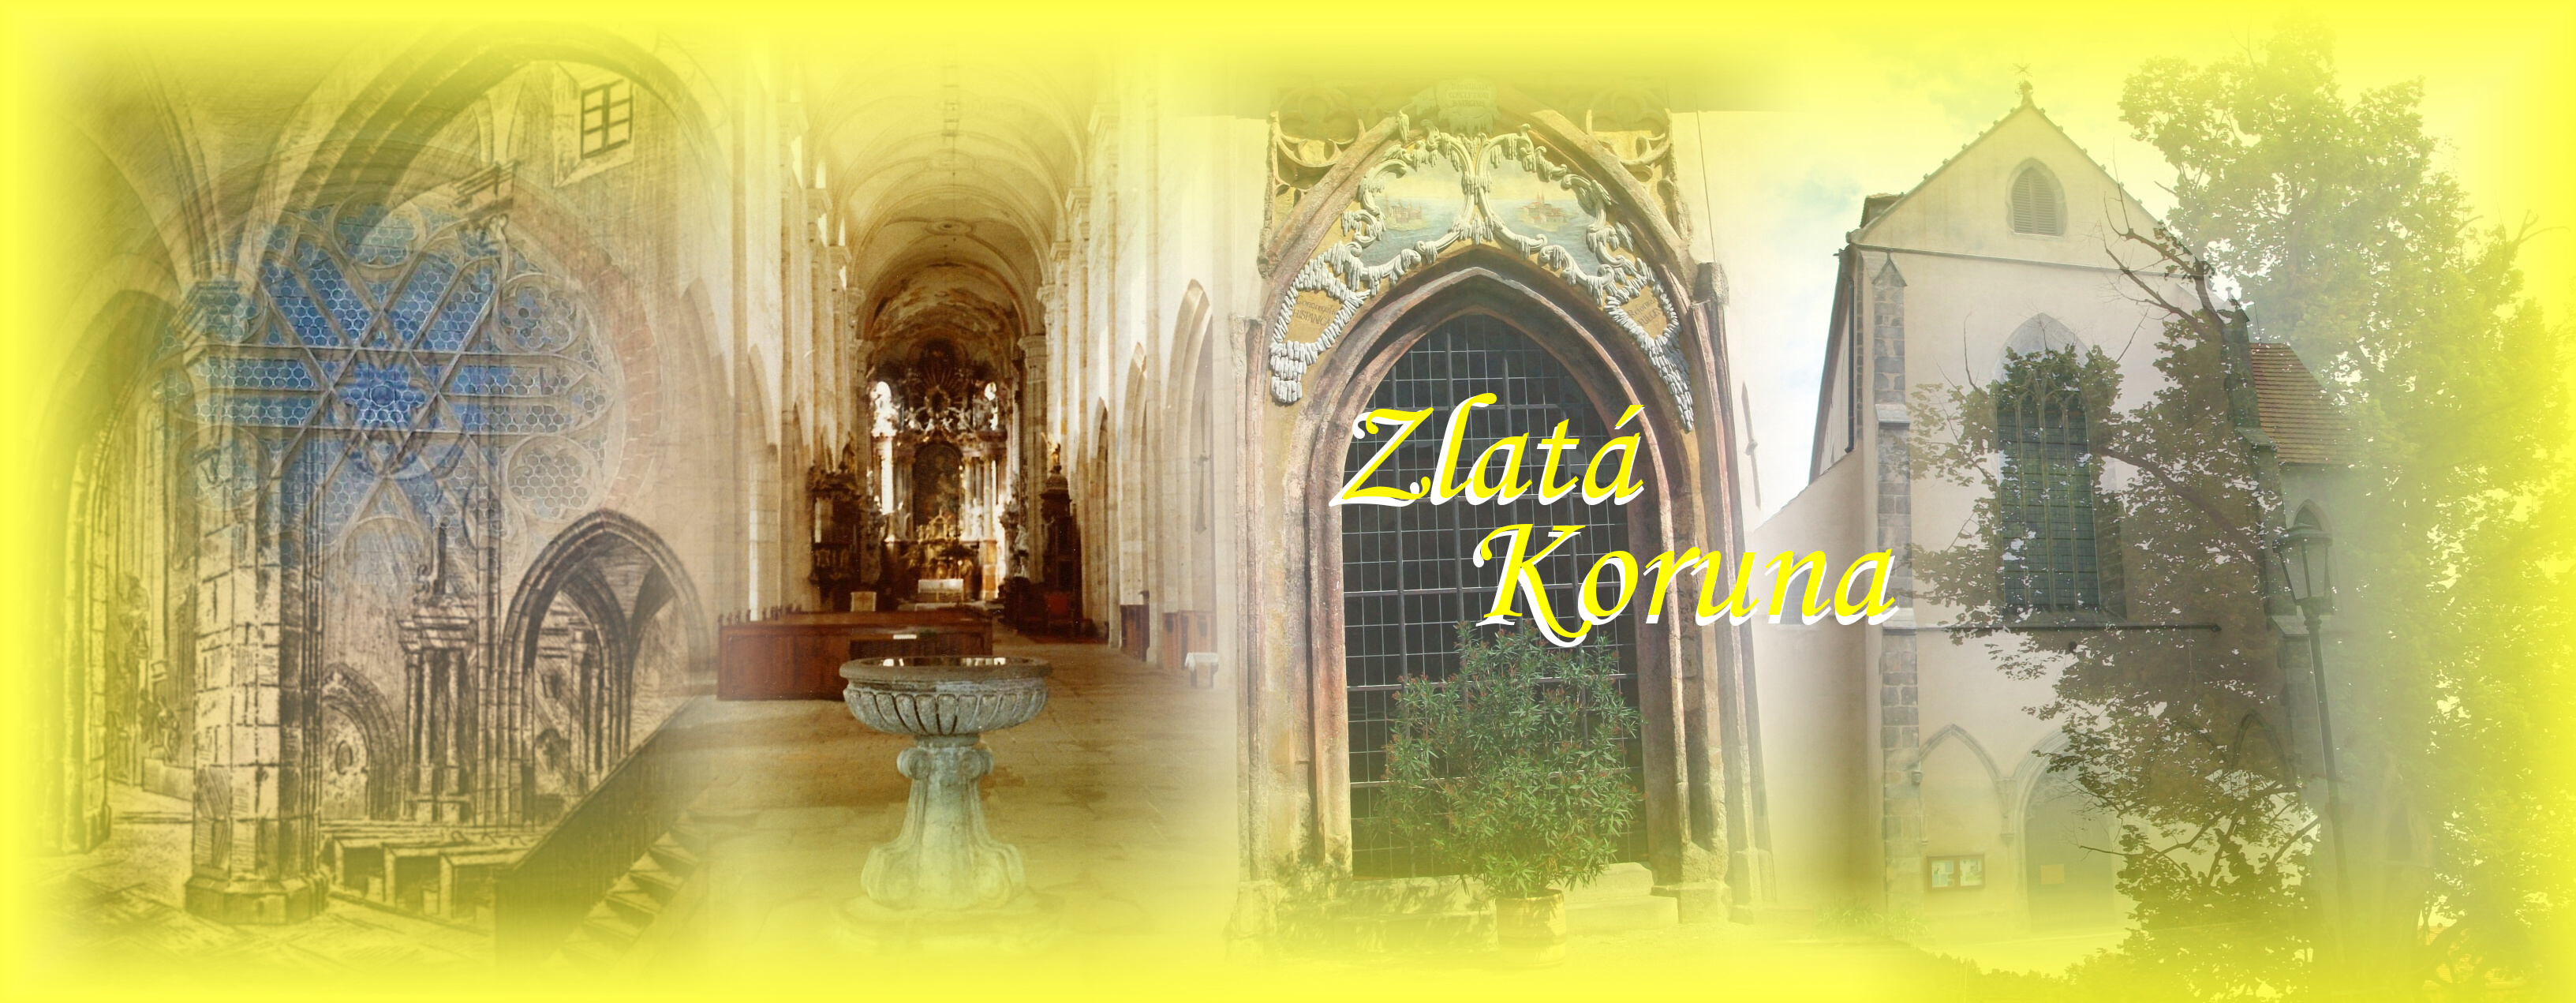 Zlatá Koruna - klášter - fotogalerie, historie, zajímavosti, turistické cíle